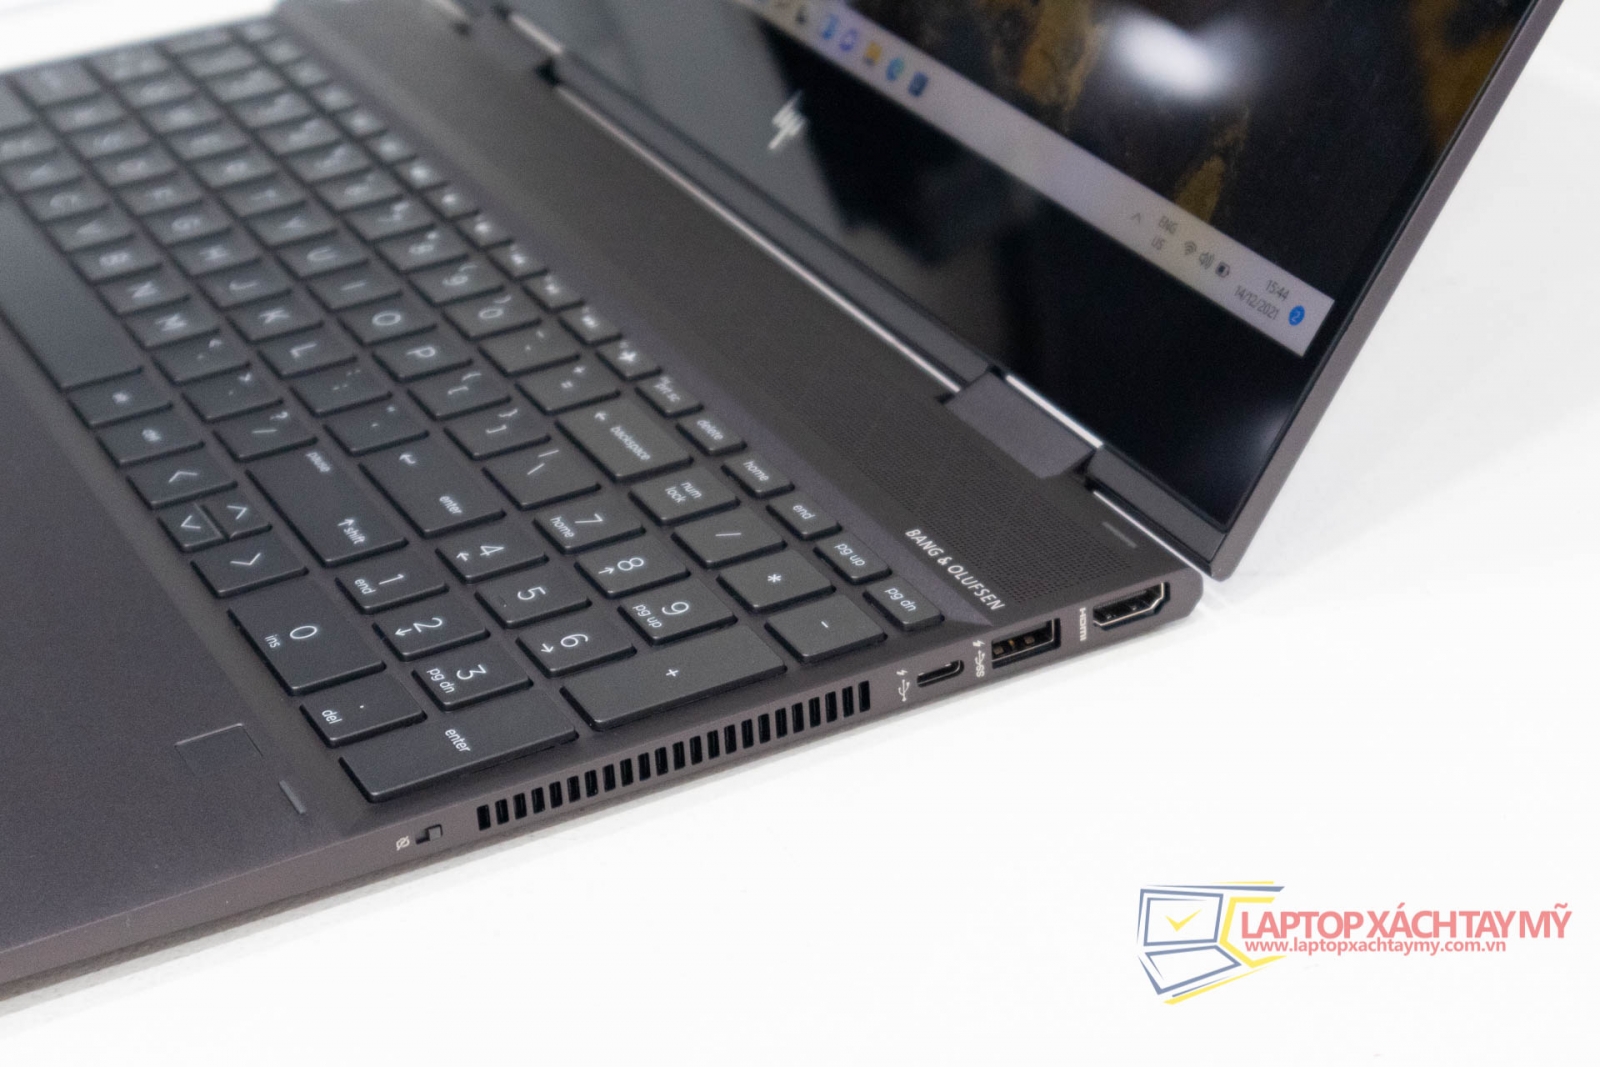 Laptop HP Envy 15 X360 - AMD Ryzen 5 3500U, 8G Ram, 256G SSD